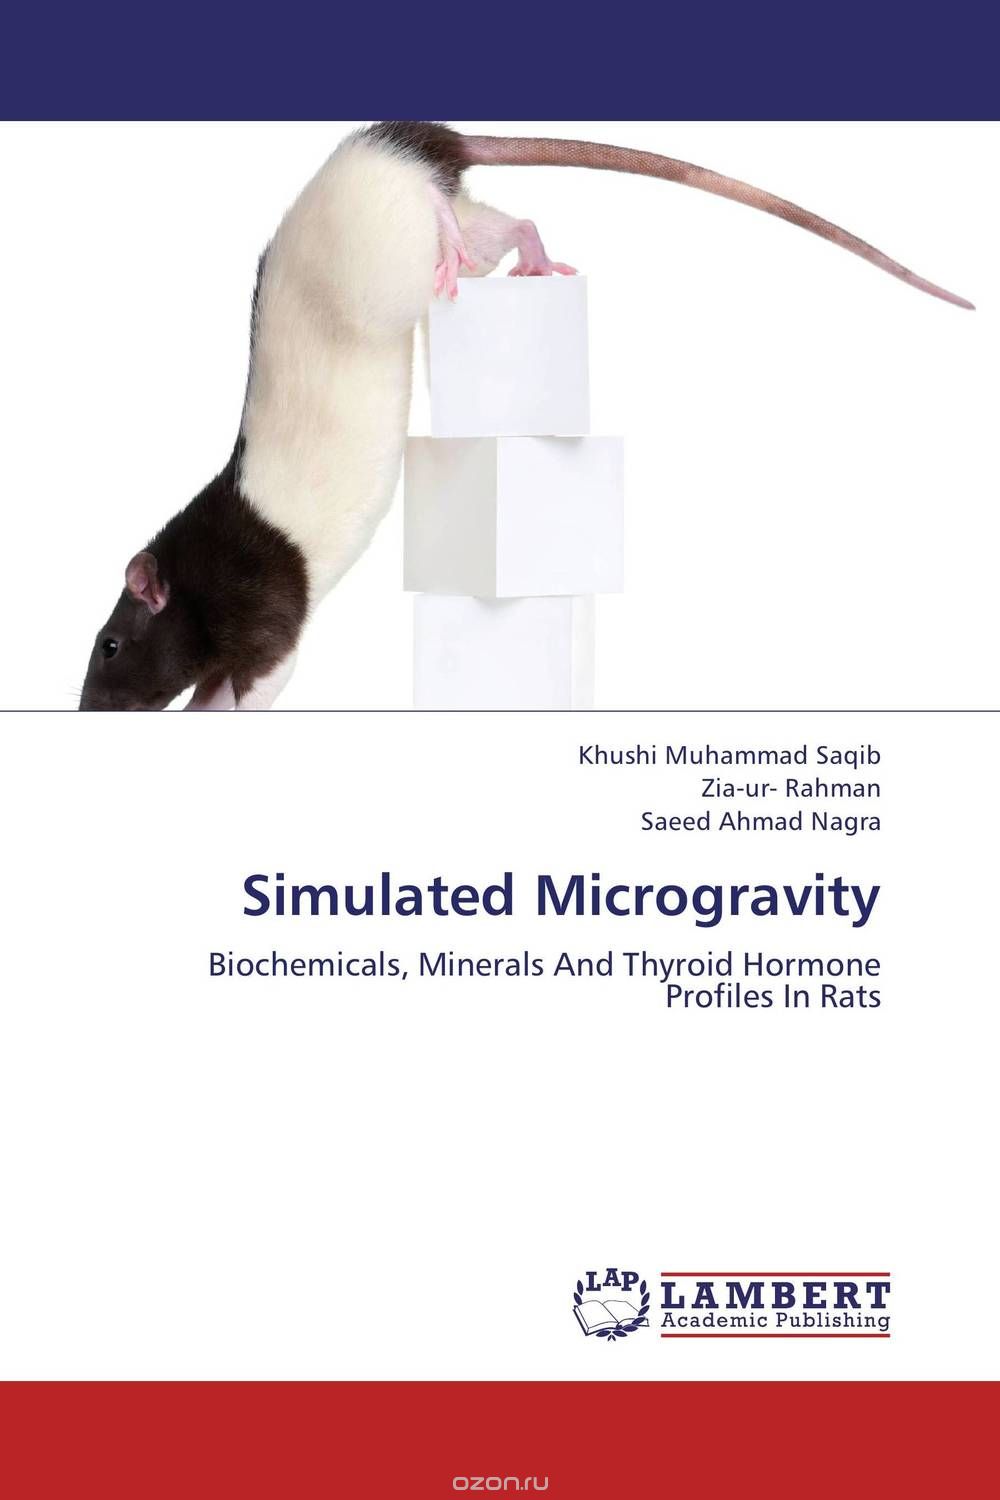 Скачать книгу "Simulated Microgravity"